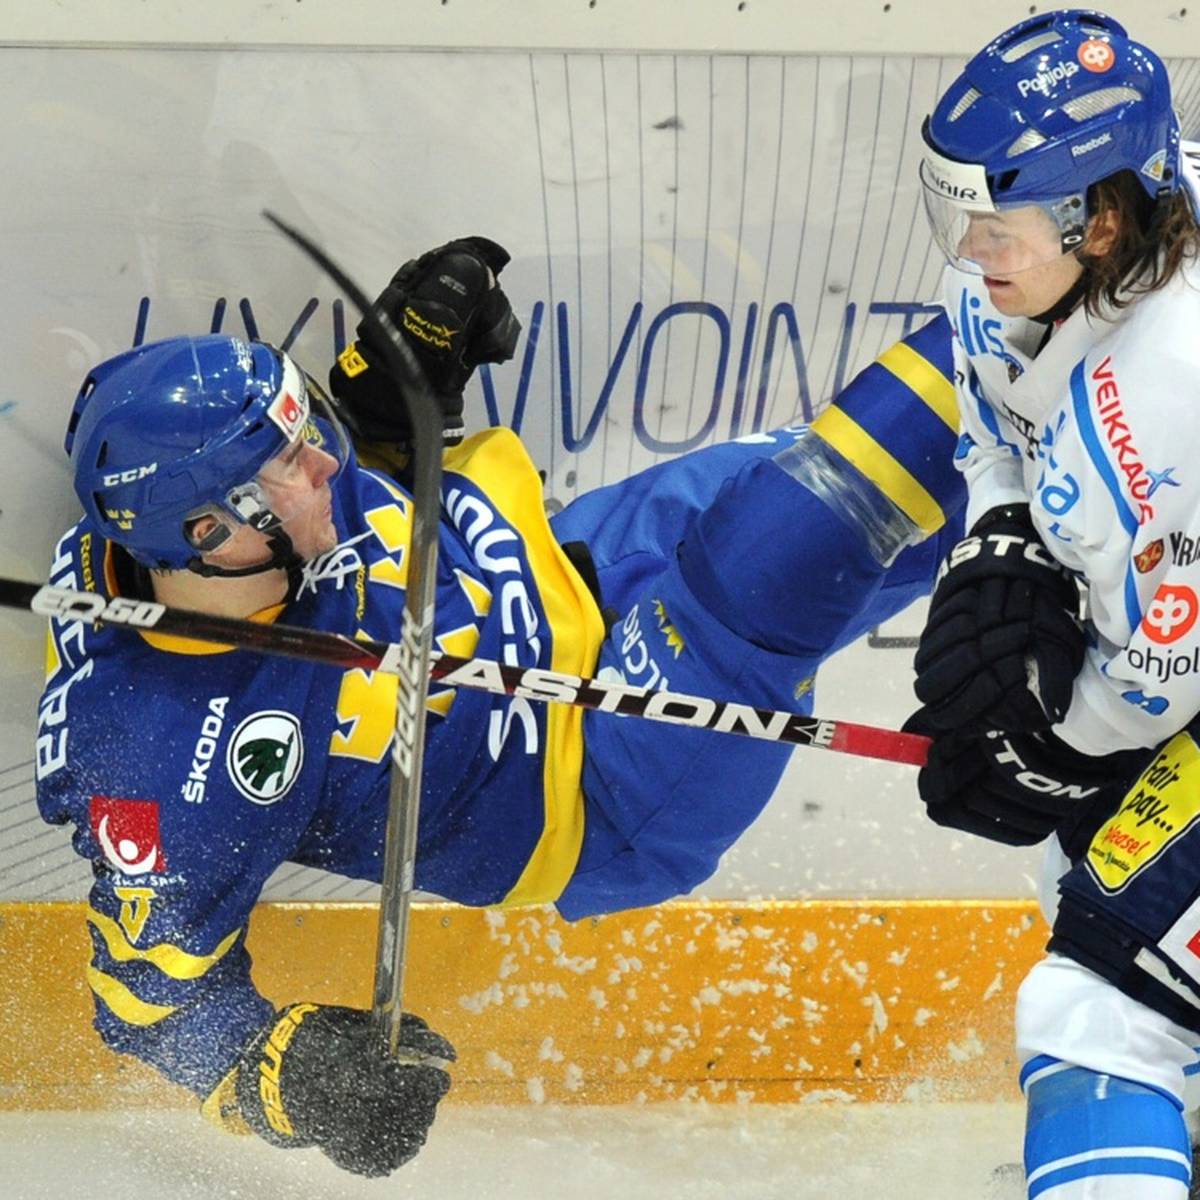 Die Düsseldorfer EG hat den finnischen Verteidiger Mikko Kousa für die restliche Saison in der Deutschen Eishockey Liga (DEL) unter Vertrag genommen.